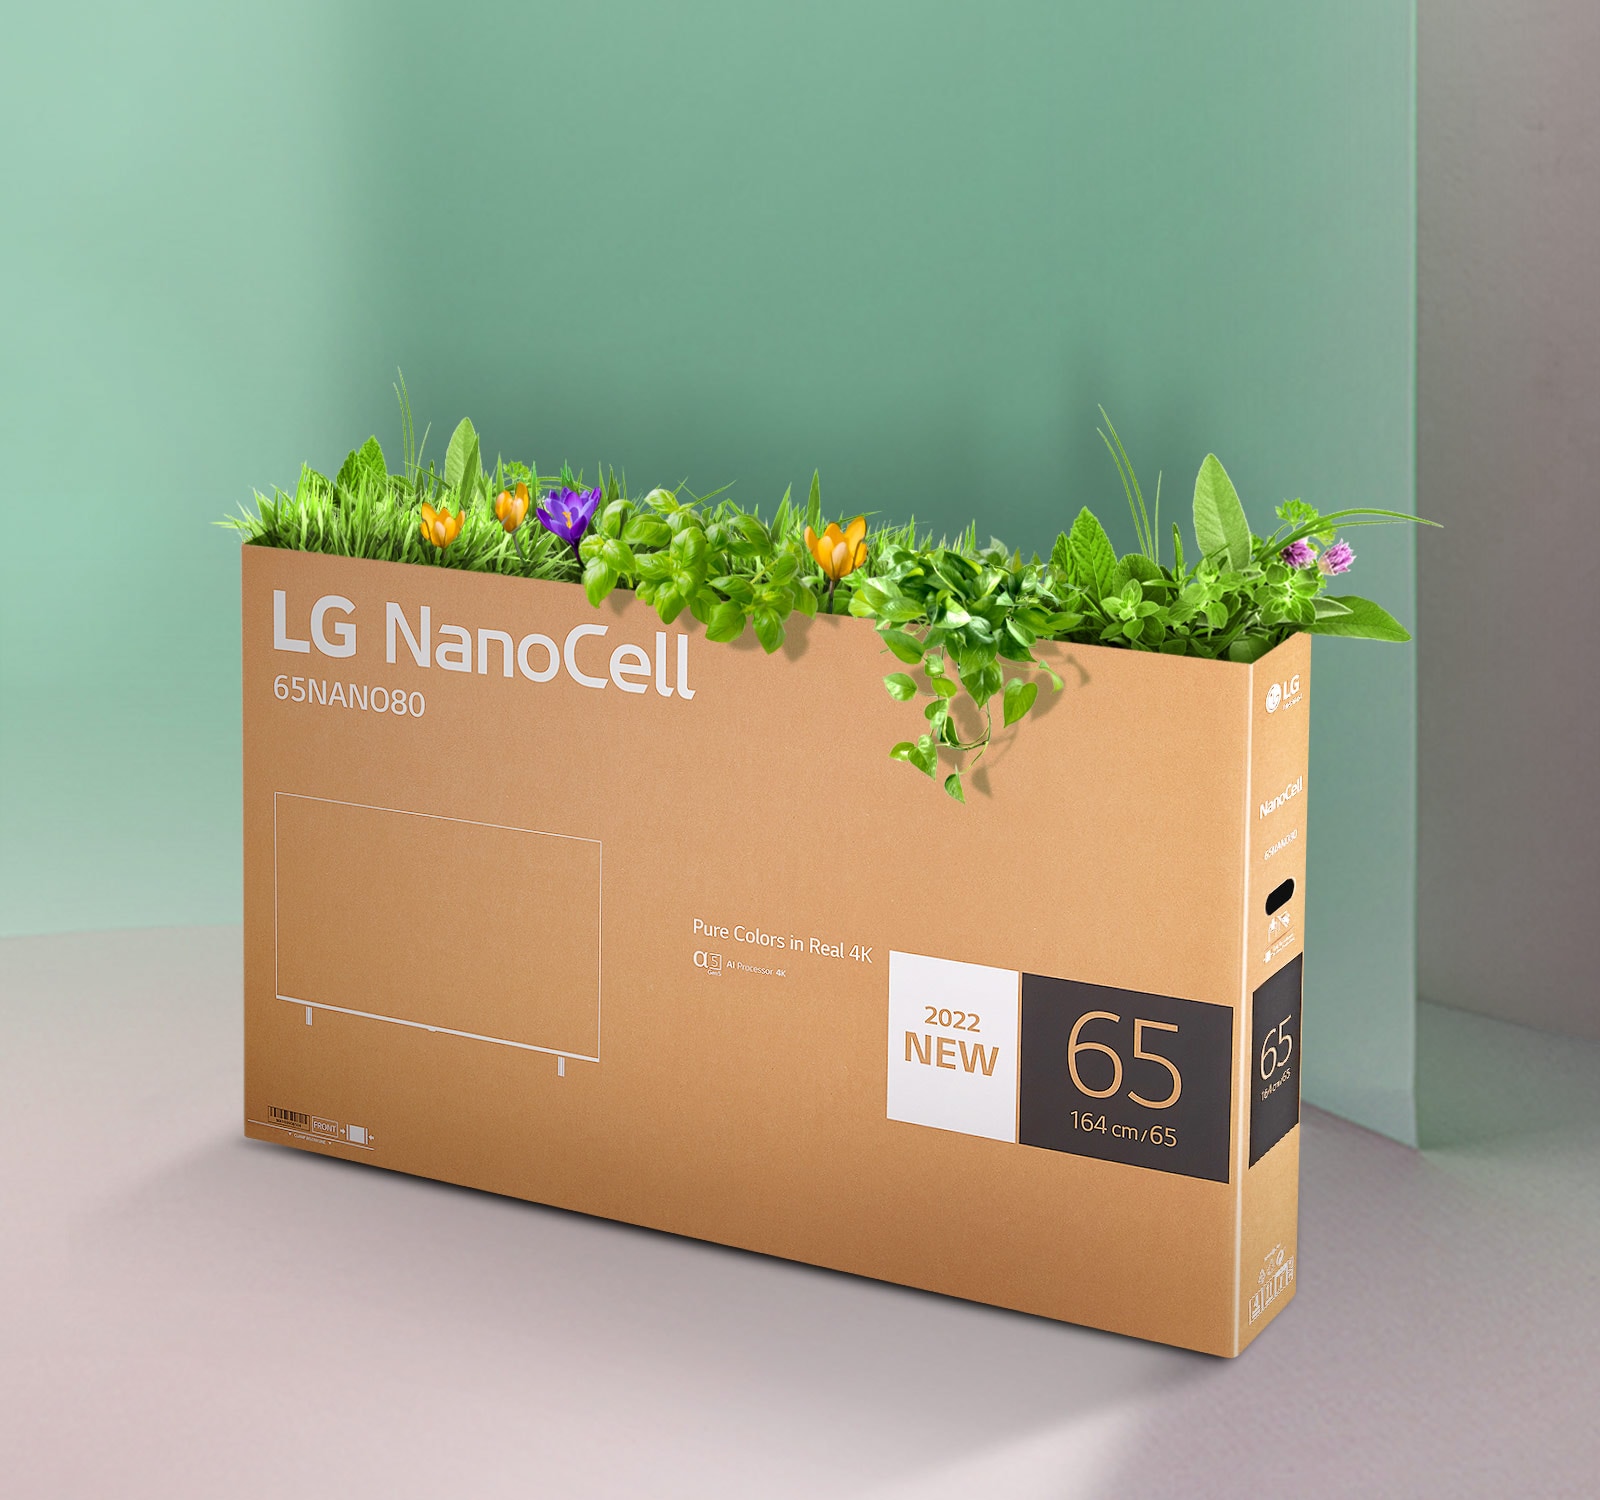 Ανακυκλώσιμο κουτί της LG NanoCell TV με λουλούδια και φυτά που φυτρώνουν από την κορυφή του κουτιού.